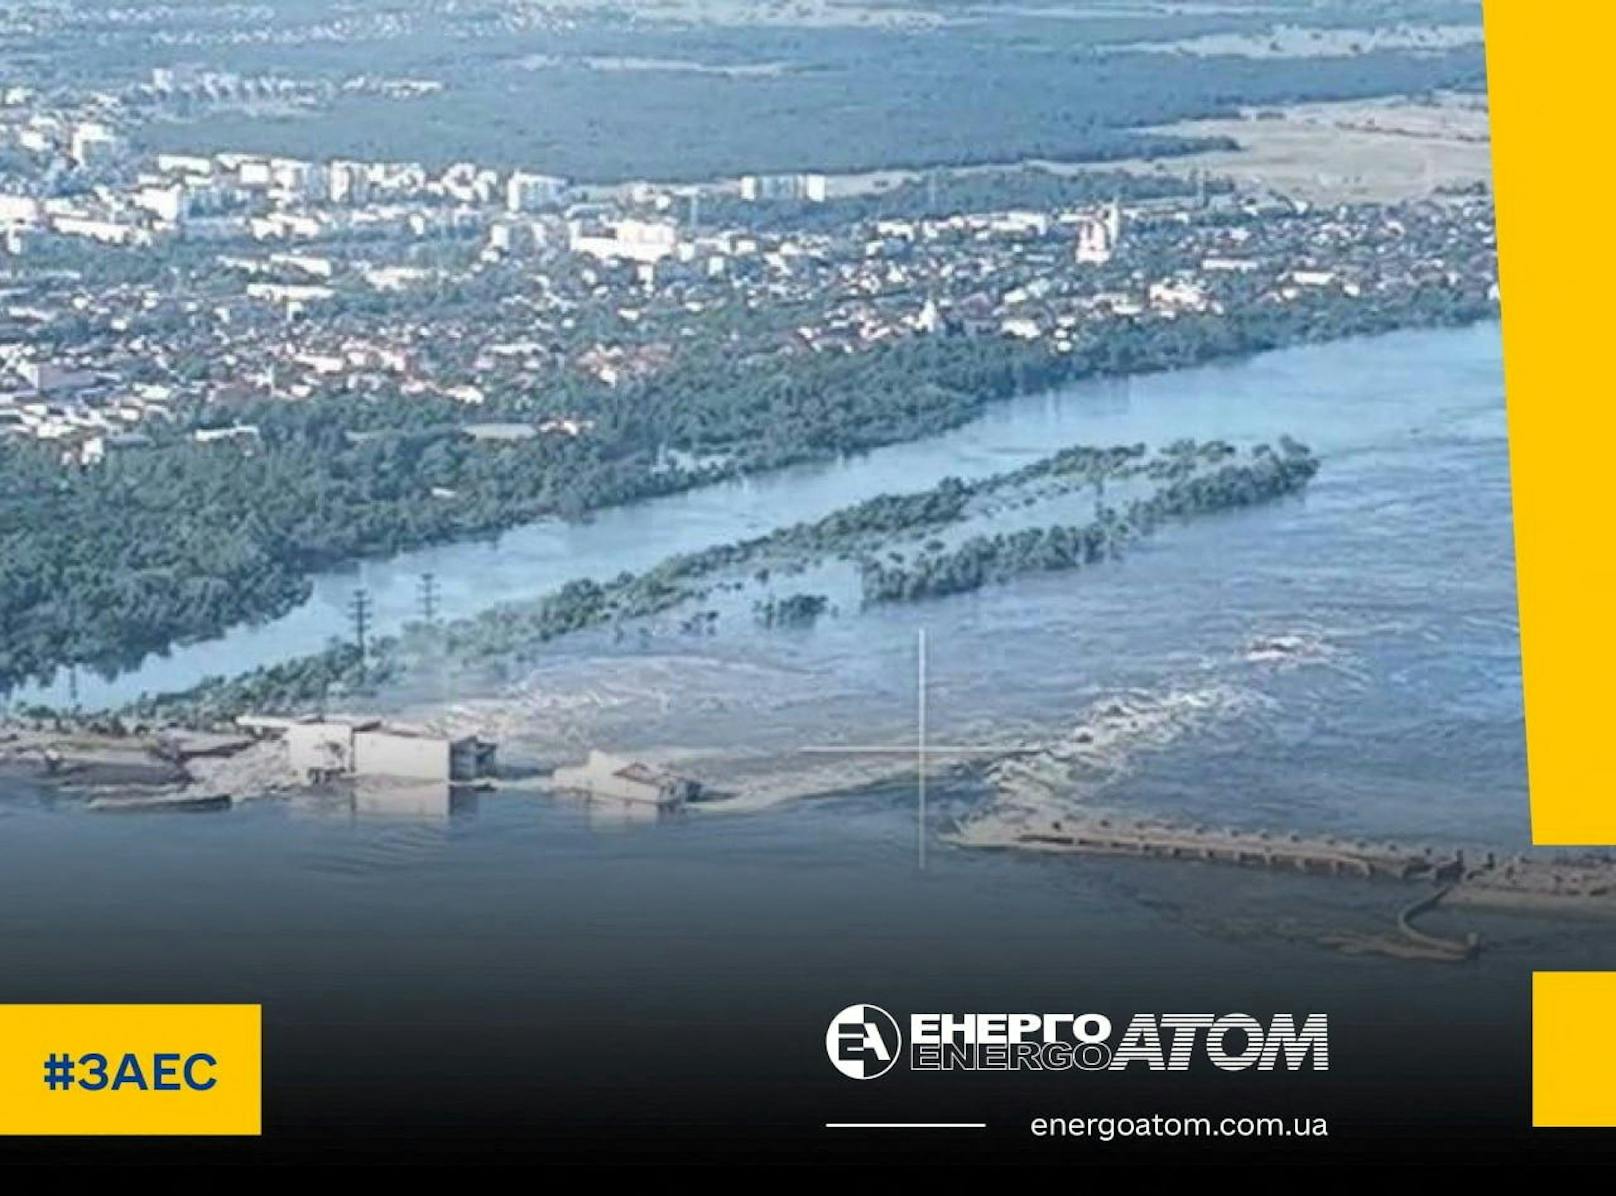 Grund dafür ist die Zerstörung des Kachowka-Staudamms in der Nacht zum 6. Juni 2023.